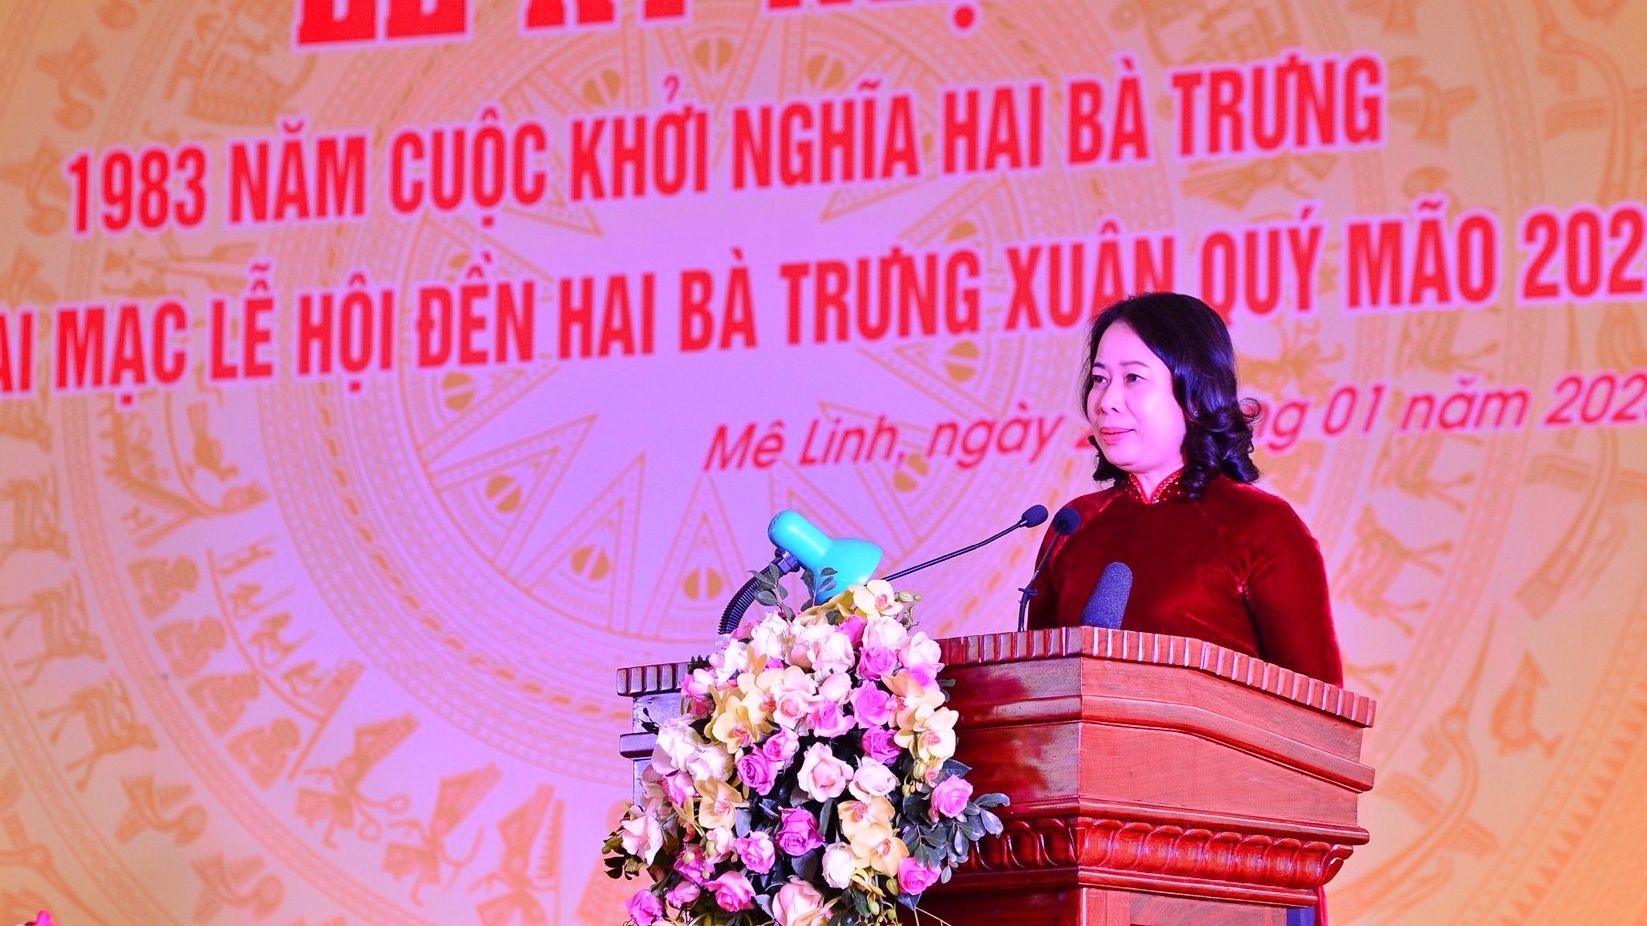 Quyền Chủ tịch nước Võ Thị Ánh Xuân dự lễ hội đền Hai Bà Trưng - ảnh 2